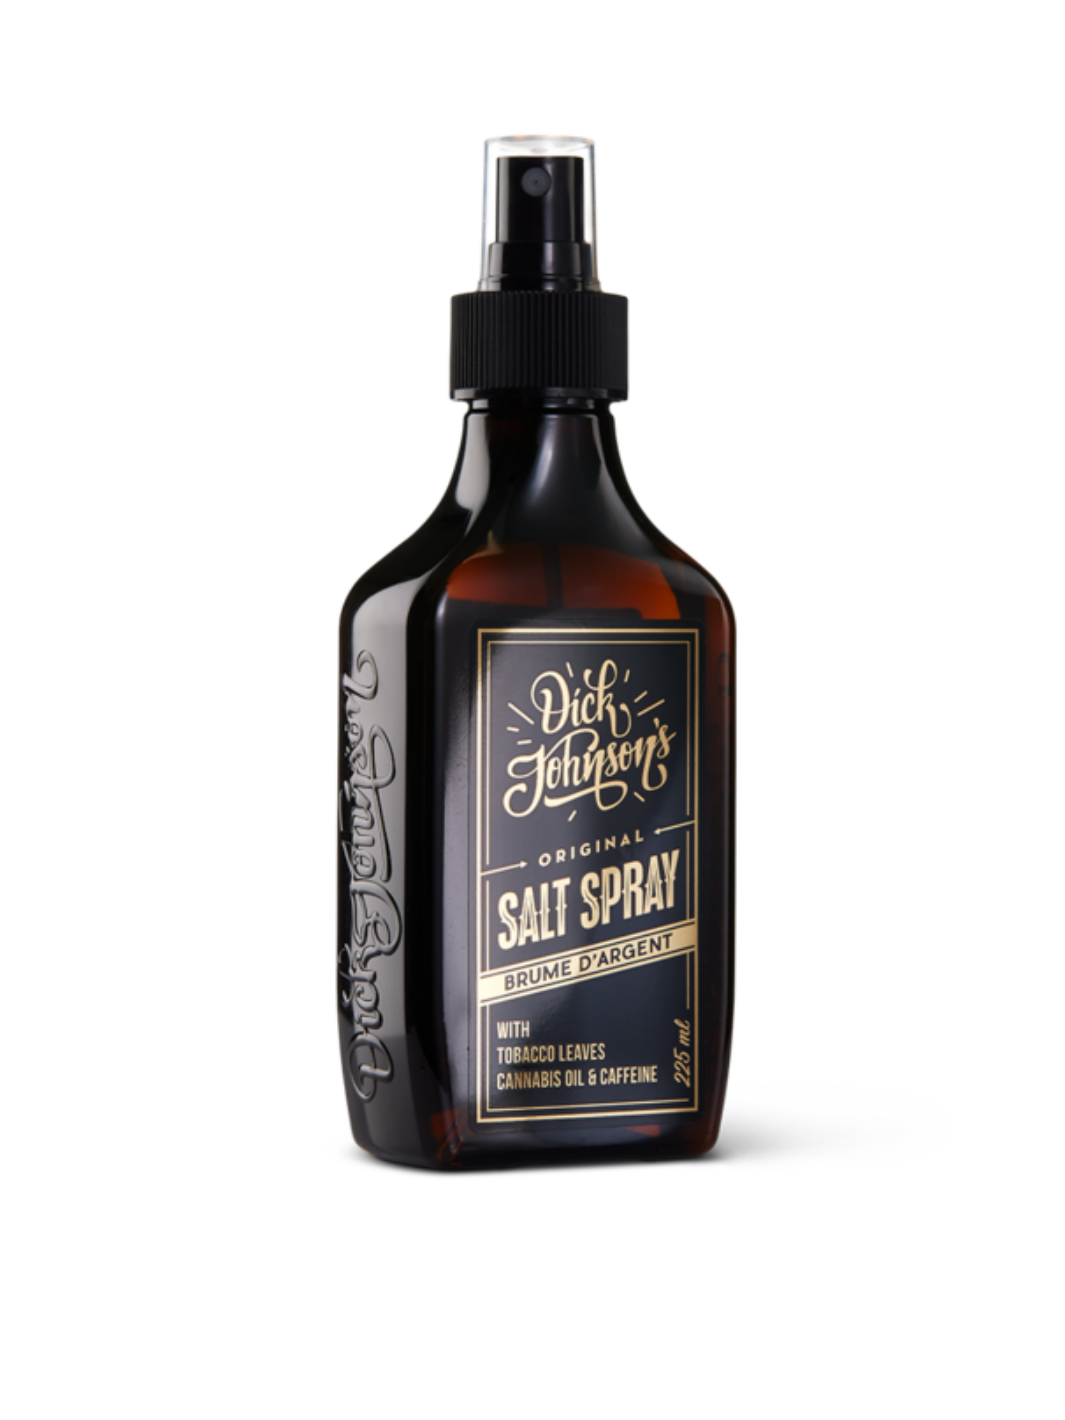 Dick Johnson Salt Spray Brume d'Argent 225ml für texturiertes Volumen und mattes Finish, jetzt bei Phullcutz für stylishe und natürliche Strand-Looks verfügbar.